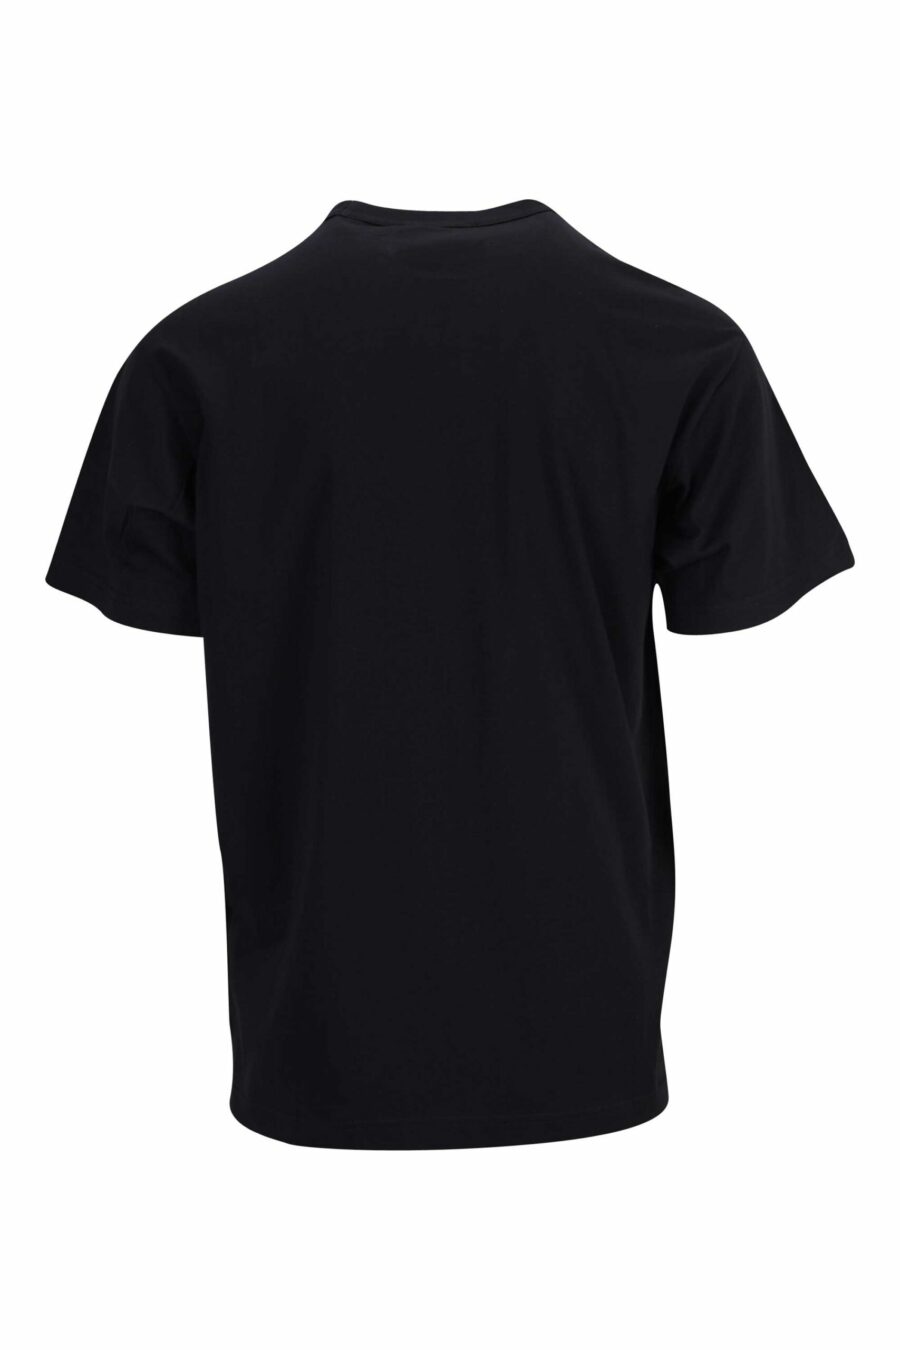 Camiseta negra con minilogo circular en contraste - 8052019471700 1 scaled